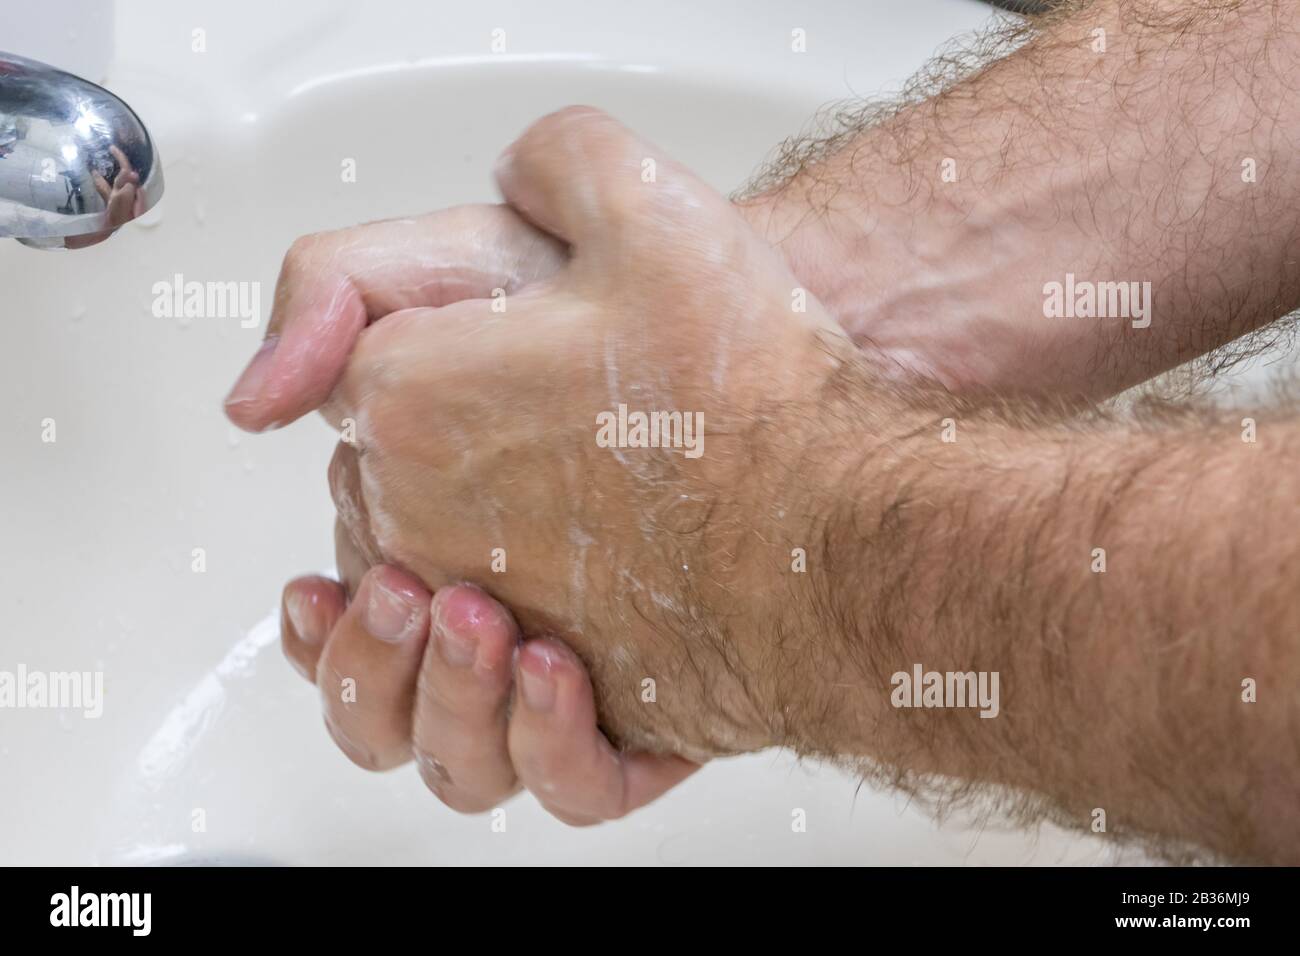 Uomo lavando le mani in primo piano lavabo, uno di diversi in serie handwashing steps Foto Stock